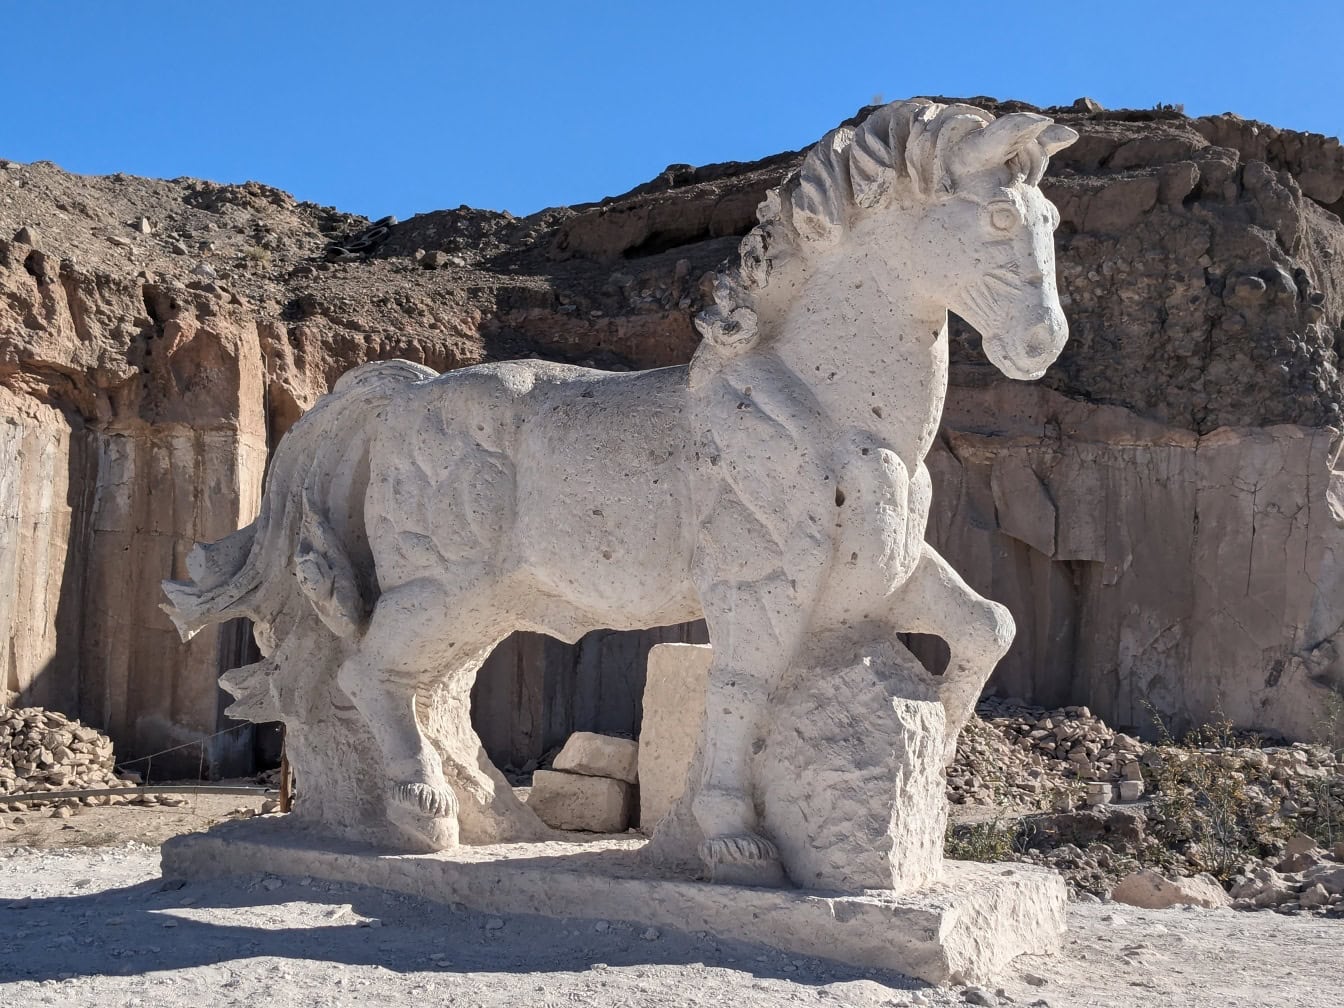 Patung batu kuda putih yang megah di rute Sillar dekat ngarai Culebrillas di Peru